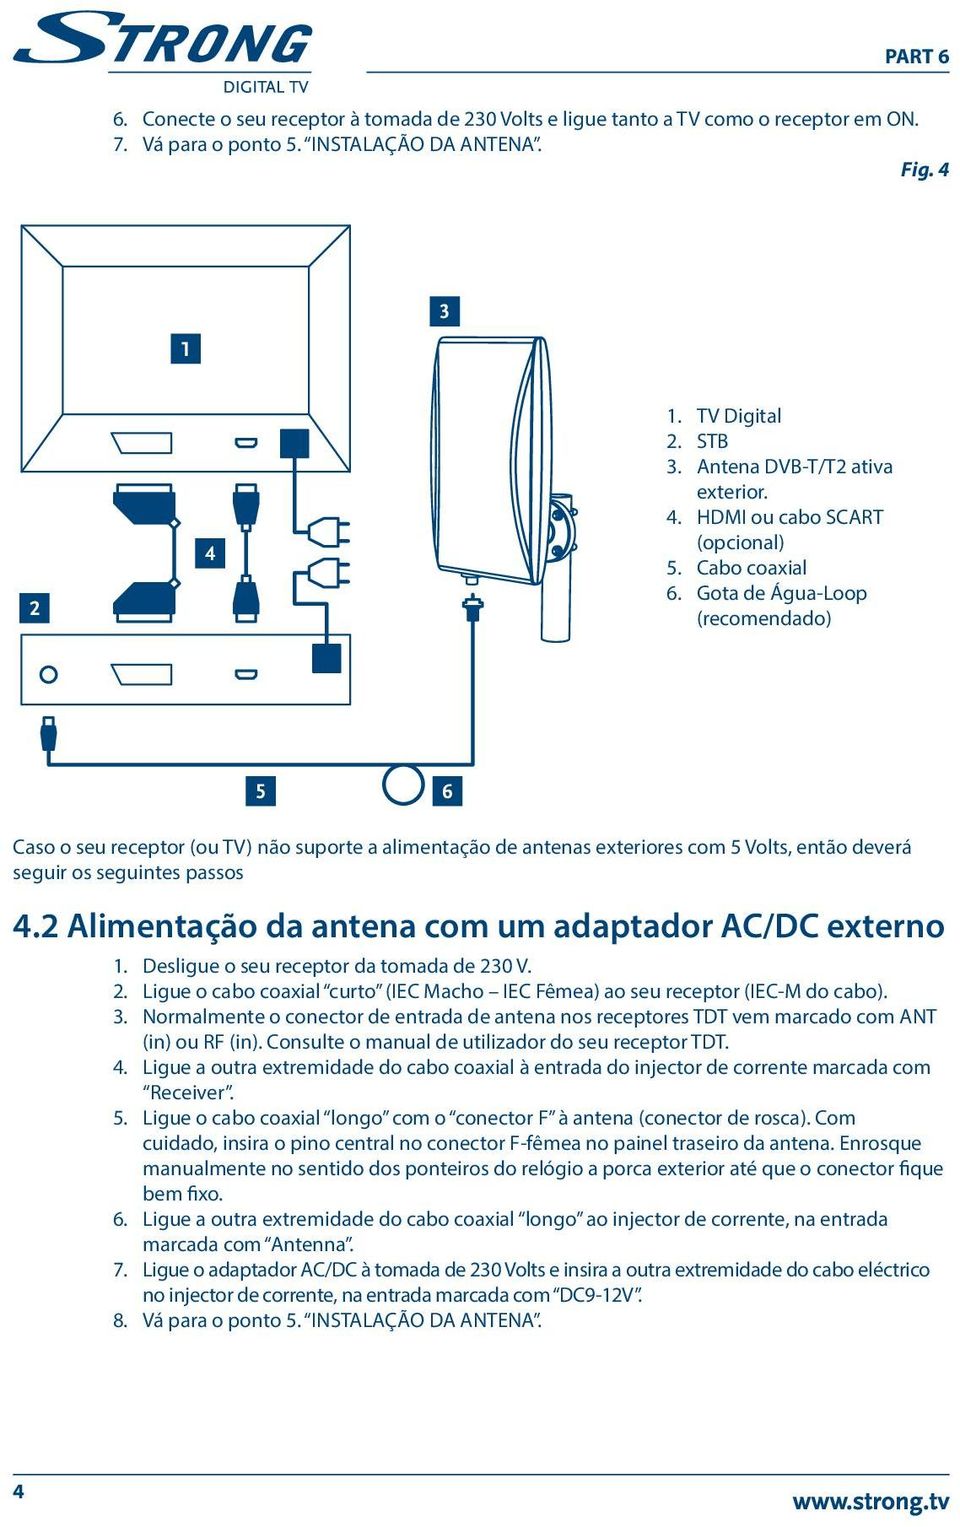 Gota de Água-Loop (recomendado) 5 6 Caso o seu receptor (ou TV) não suporte a alimentação de antenas exteriores com 5 Volts, então deverá seguir os seguintes passos 4.